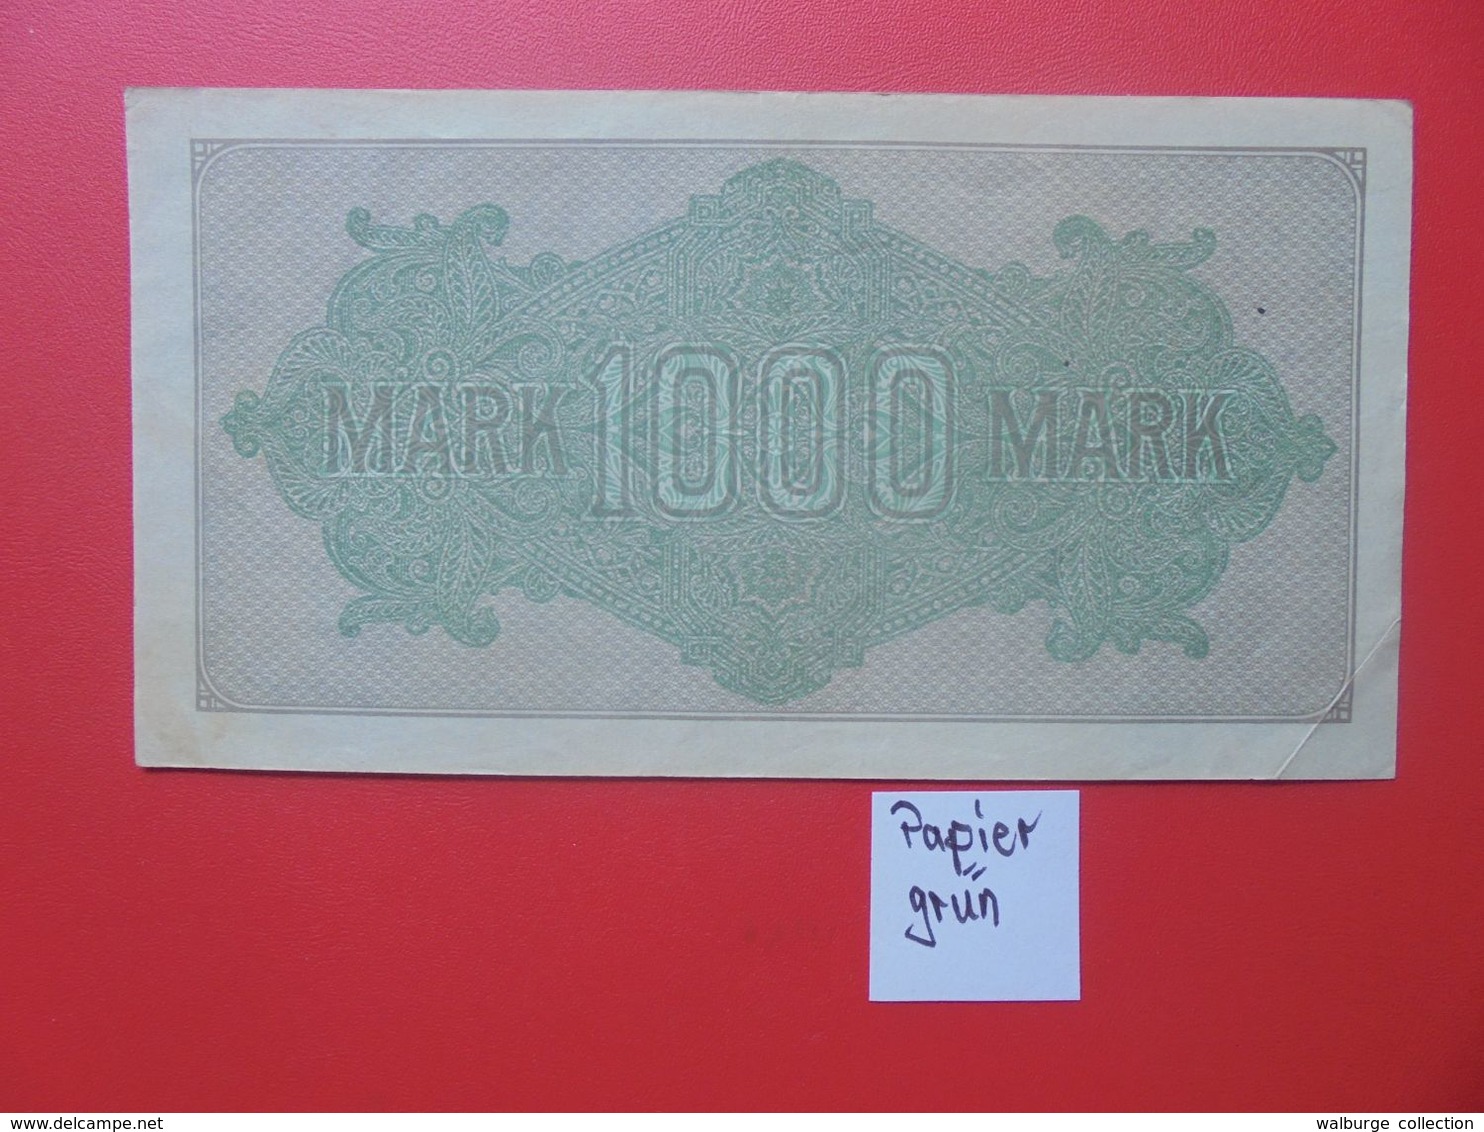 Reichsbanknote 1000 MARK 1922 VARIANTE CIRCULER (B.15) - 1000 Mark